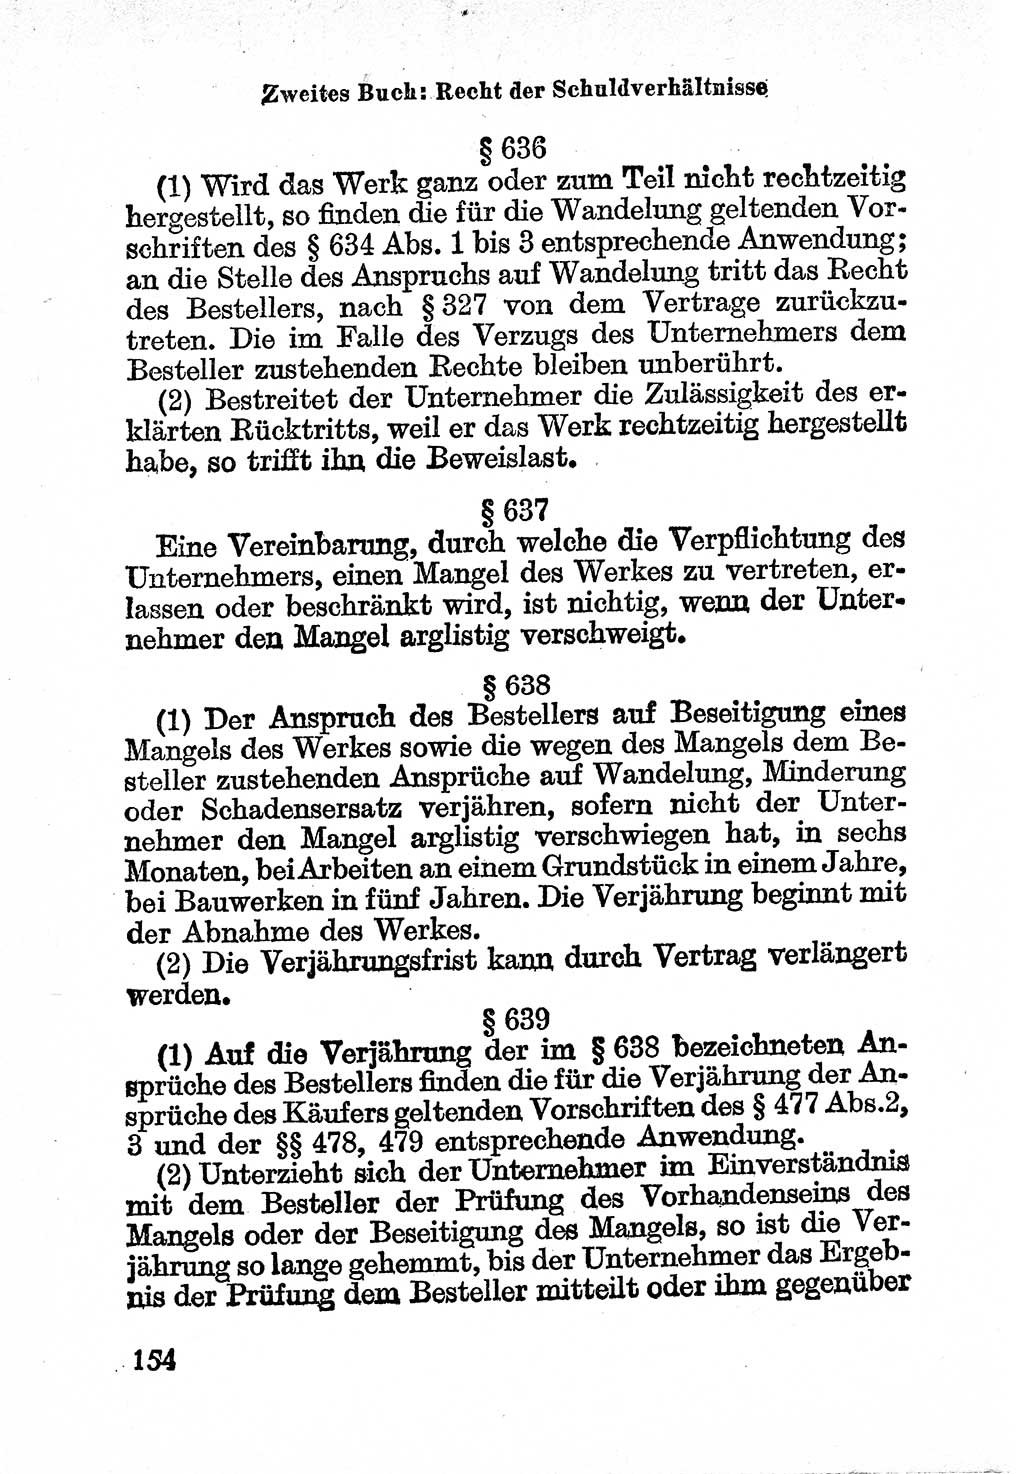 Bürgerliches Gesetzbuch (BGB) nebst wichtigen Nebengesetzen [Deutsche Demokratische Republik (DDR)] 1956, Seite 154 (BGB Nebenges. DDR 1956, S. 154)